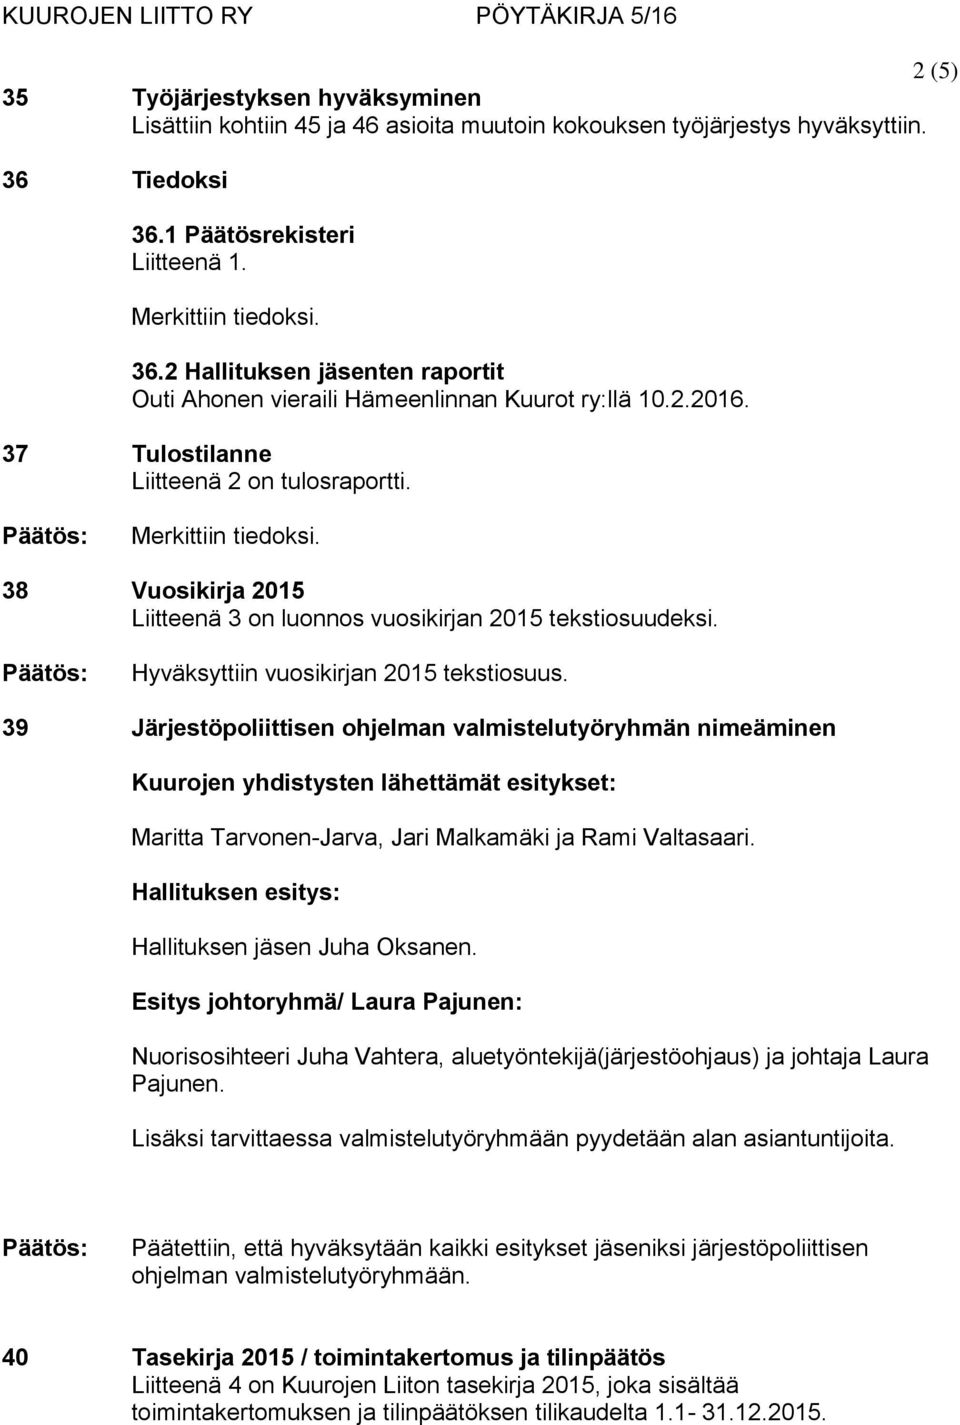 38 Vuosikirja 2015 Liitteenä 3 on luonnos vuosikirjan 2015 tekstiosuudeksi. Hyväksyttiin vuosikirjan 2015 tekstiosuus.